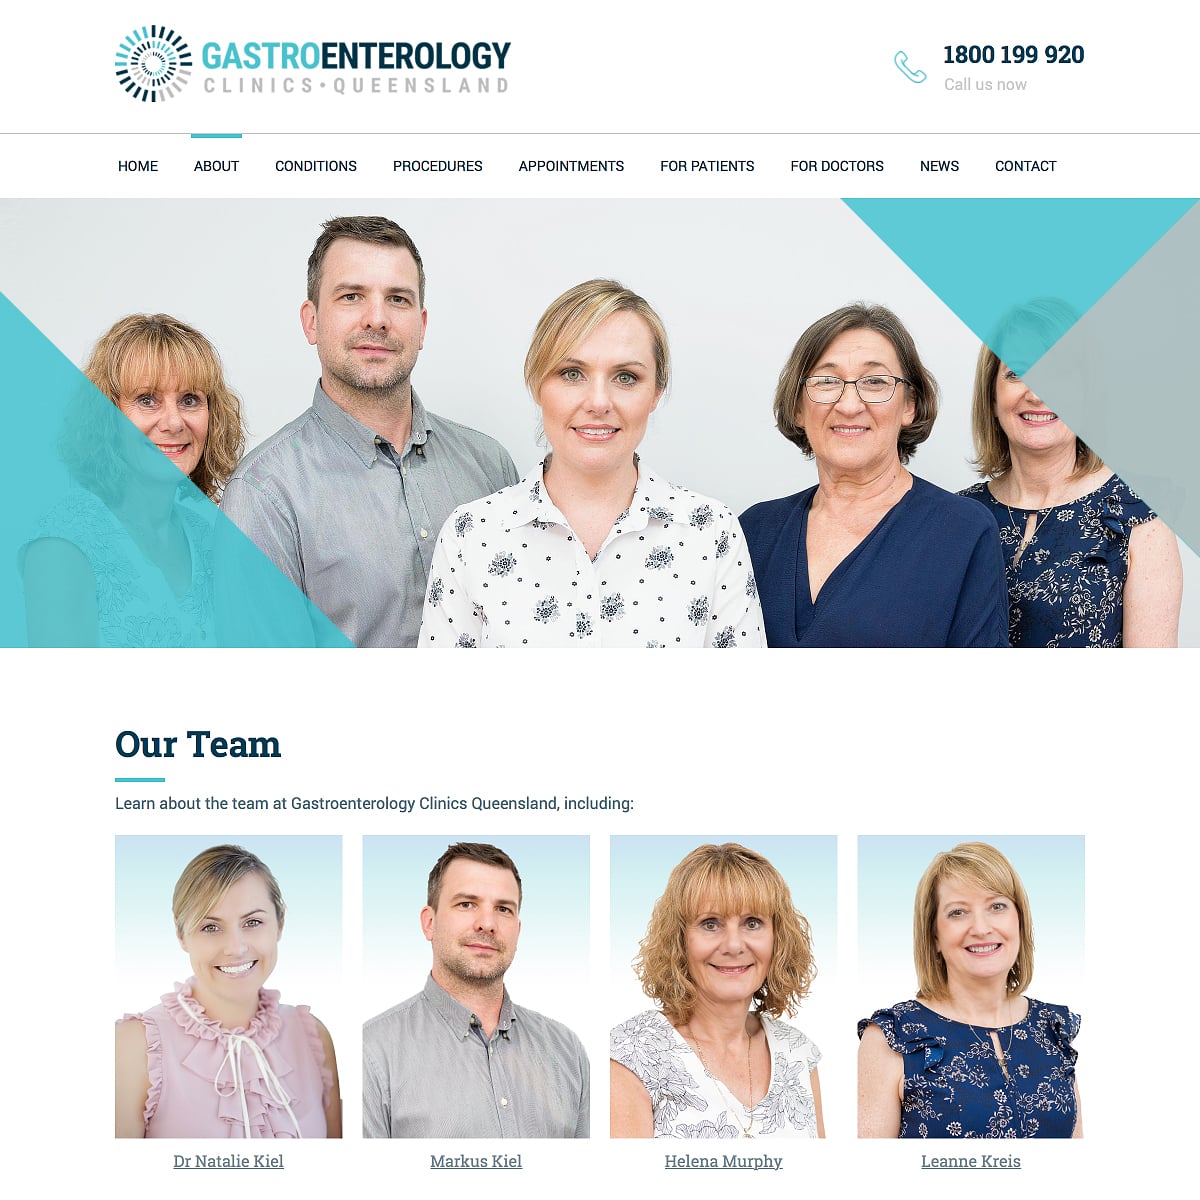 Gastroenterology Clinics Queensland - Our Team